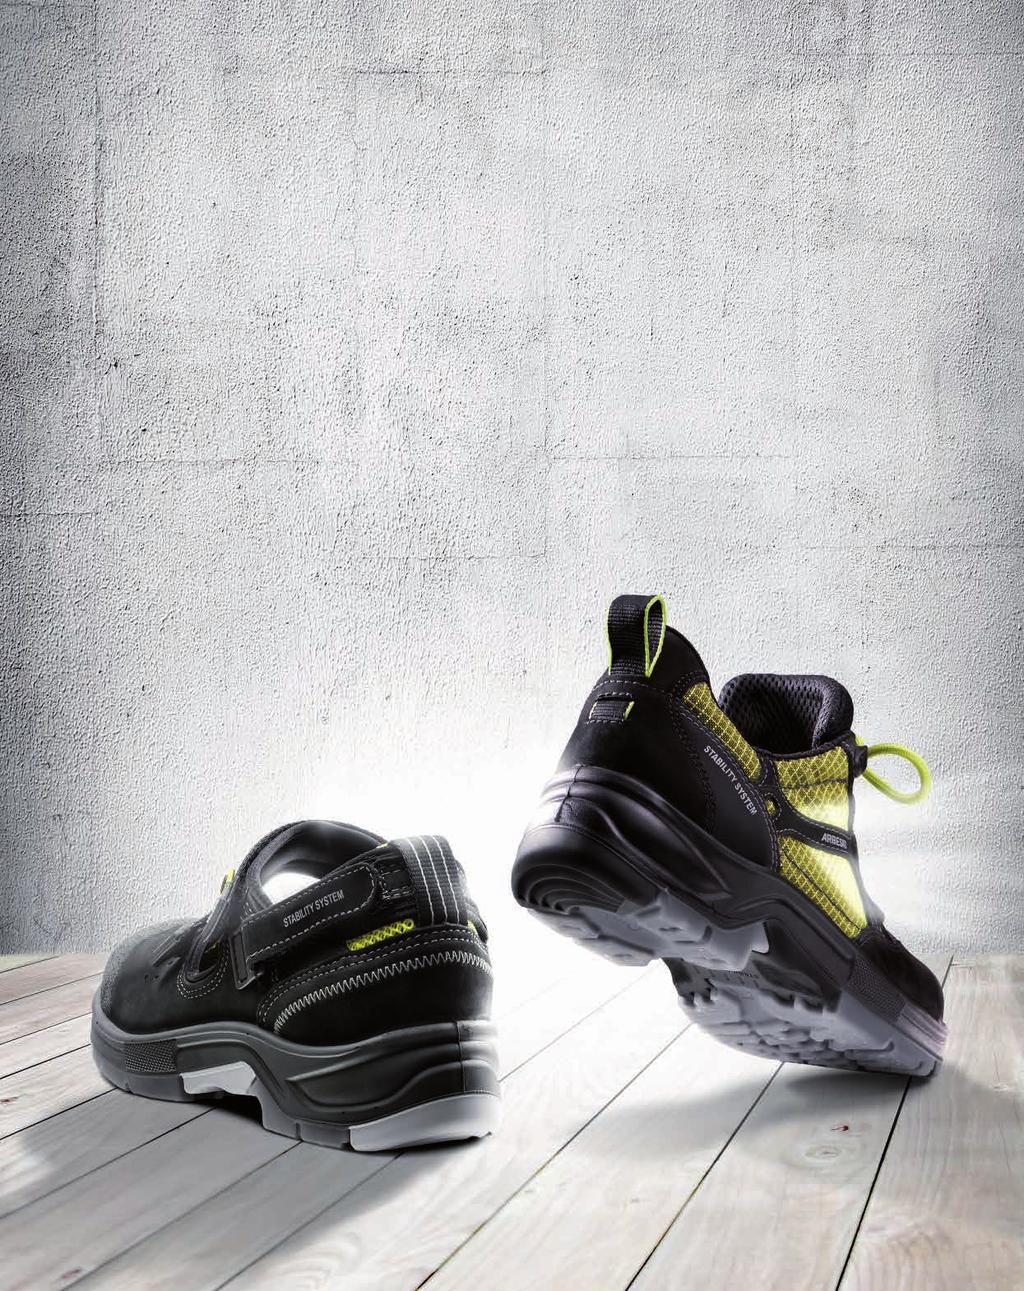 2014-06 ARBESKO MAKES A DIFFERENCE Arbesko ist ein stolzes schwedisches Familienunternehmen mit einer langen Tradition in der Schuhherstellung.